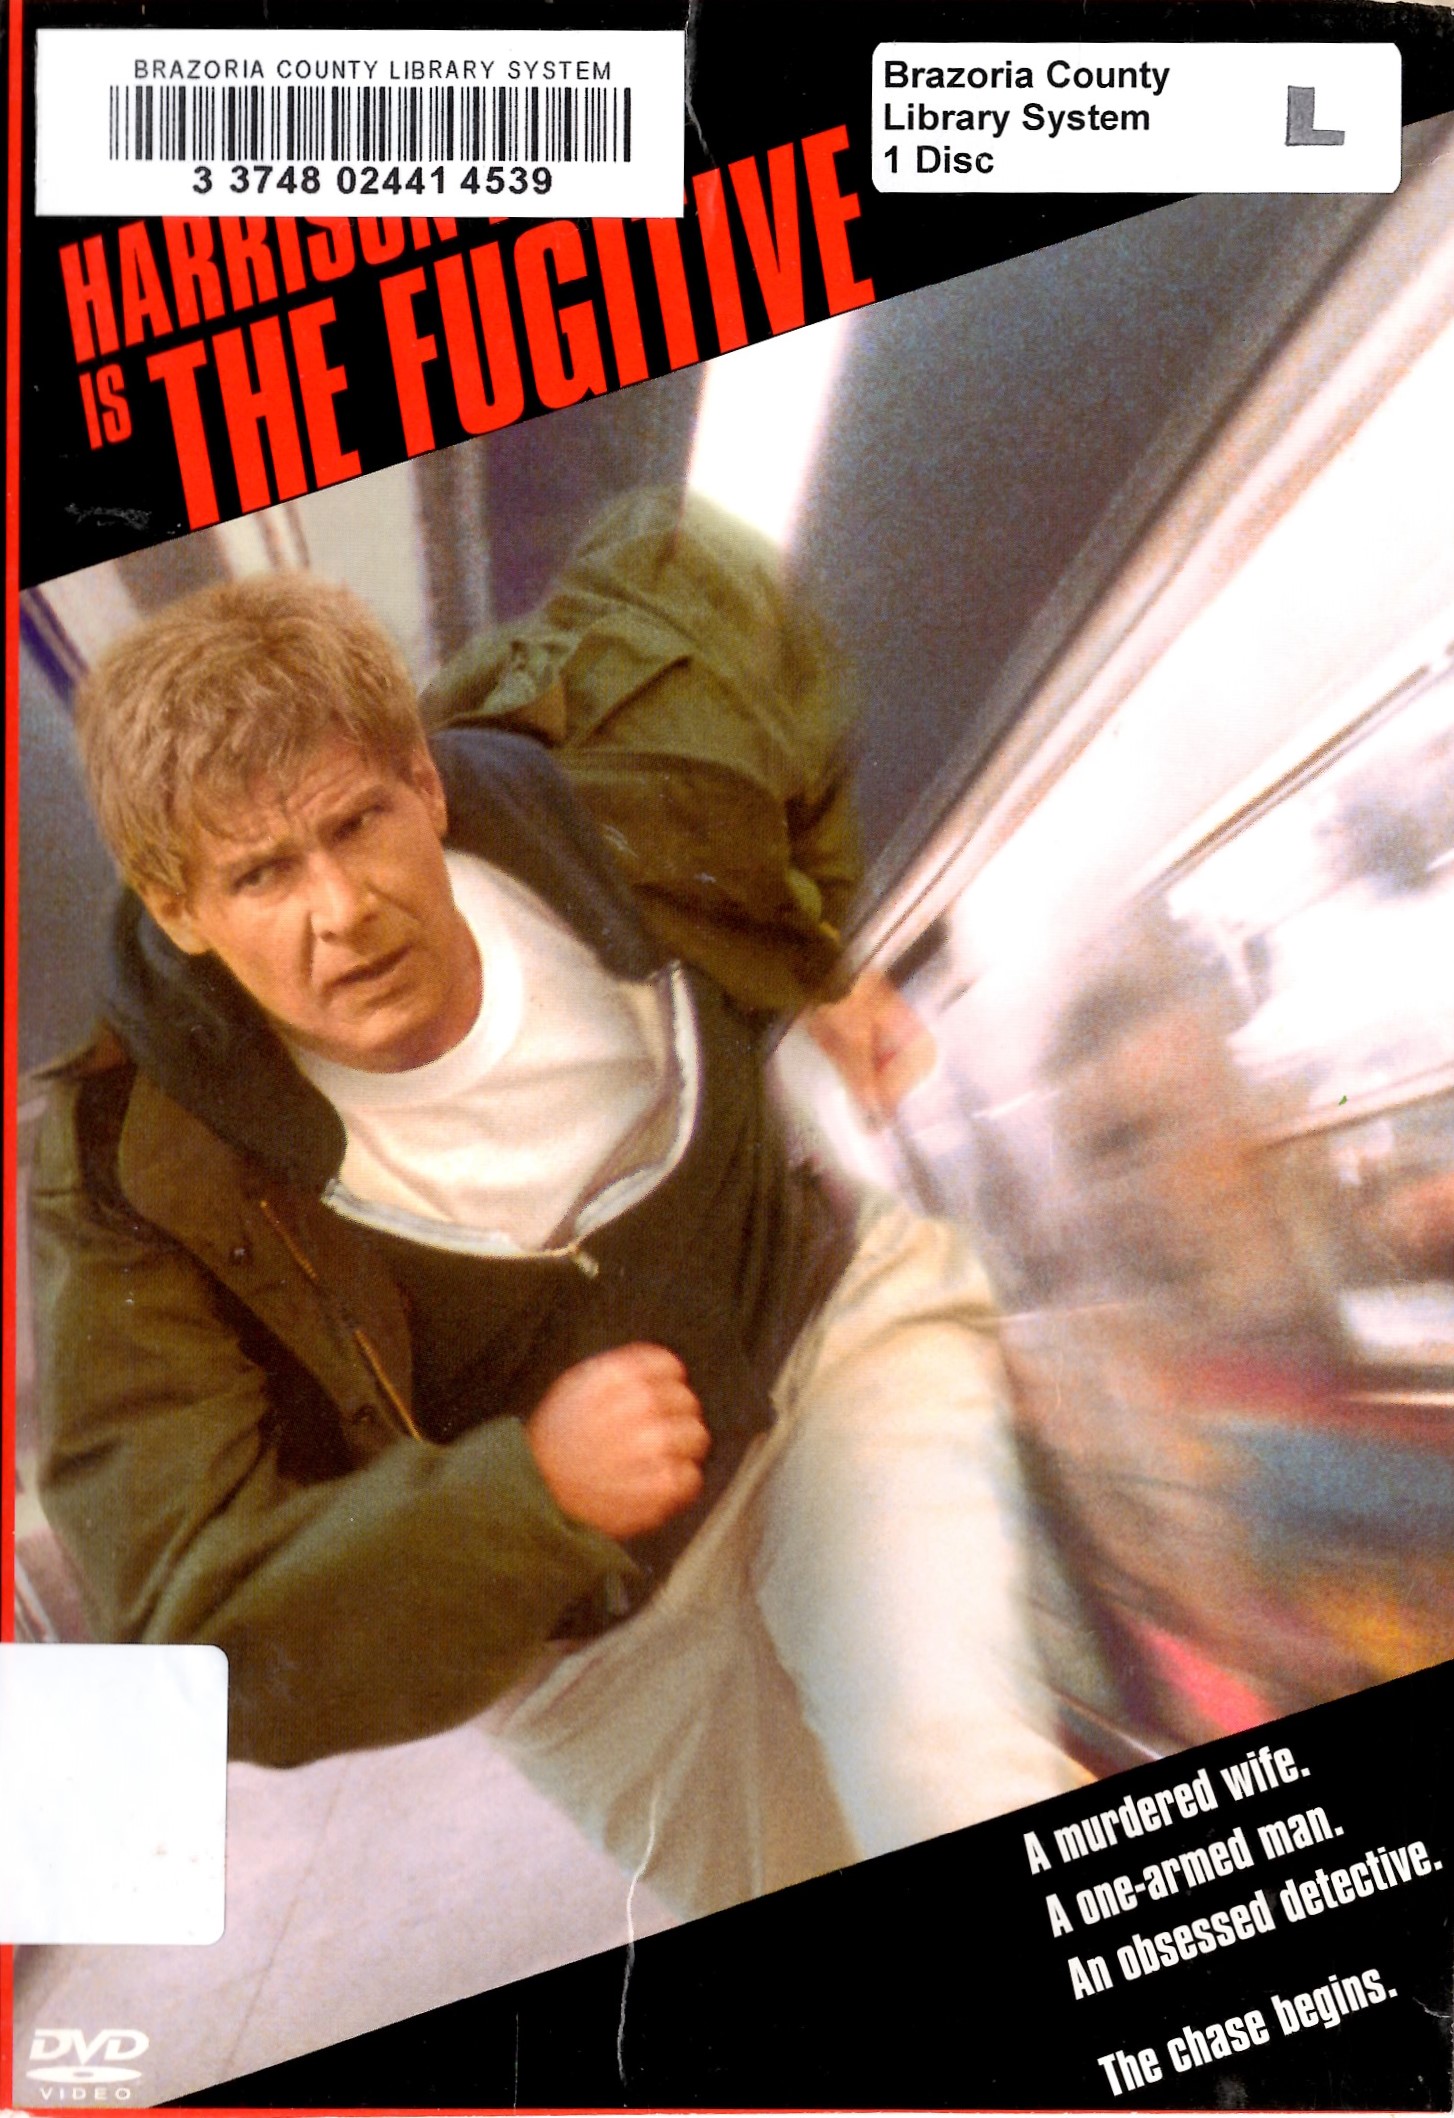 The Fugitive (2001 Reissue) | DVD Database | Fandom